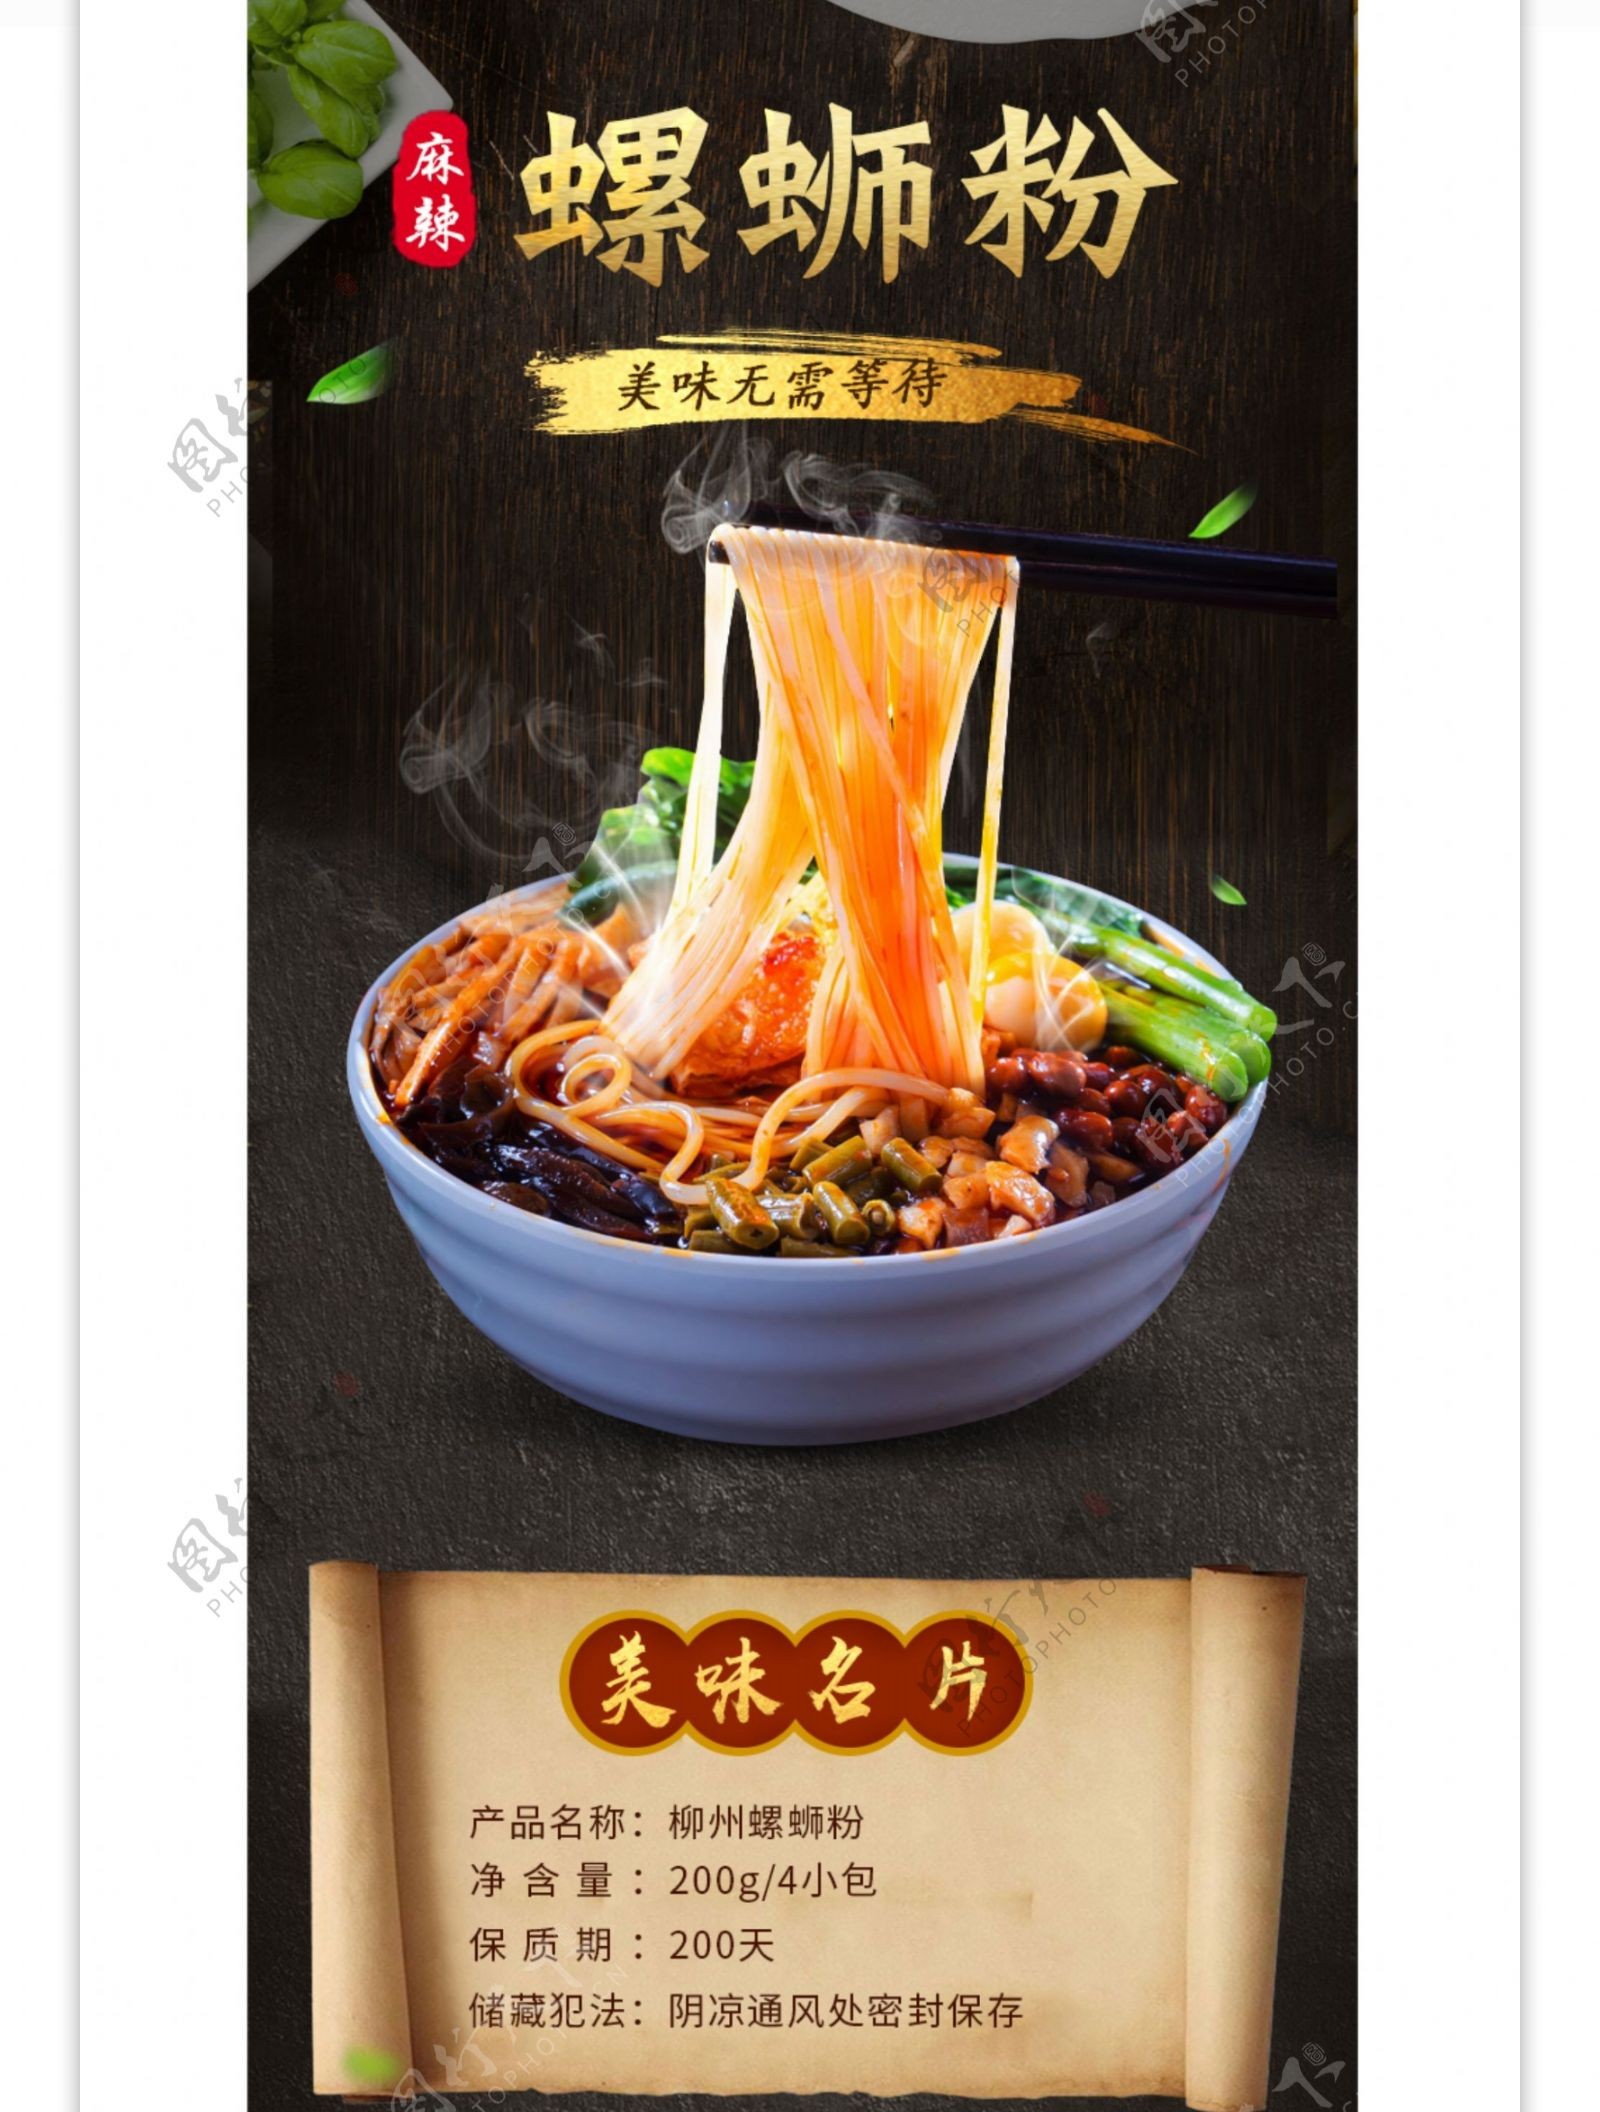 中国风食品面条热干面螺蛳粉详情页模板